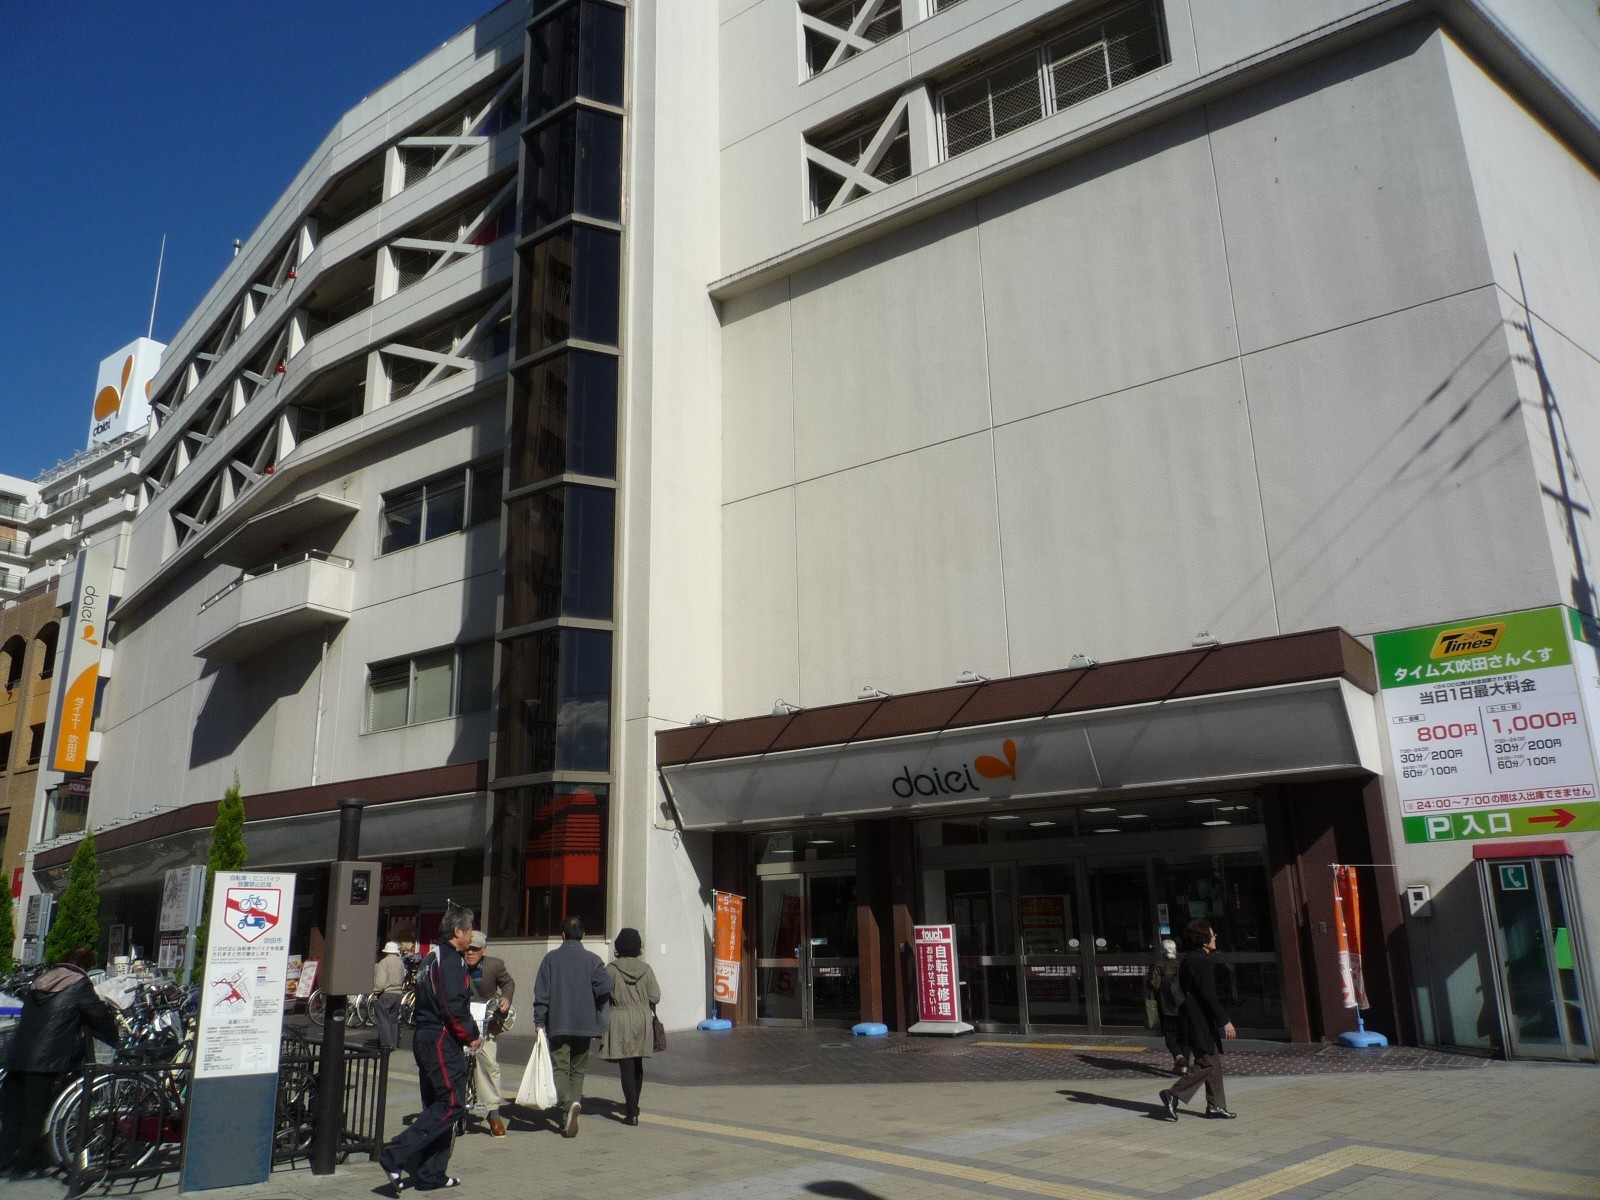 Supermarket. 1464m to Daiei Suita store (Super)